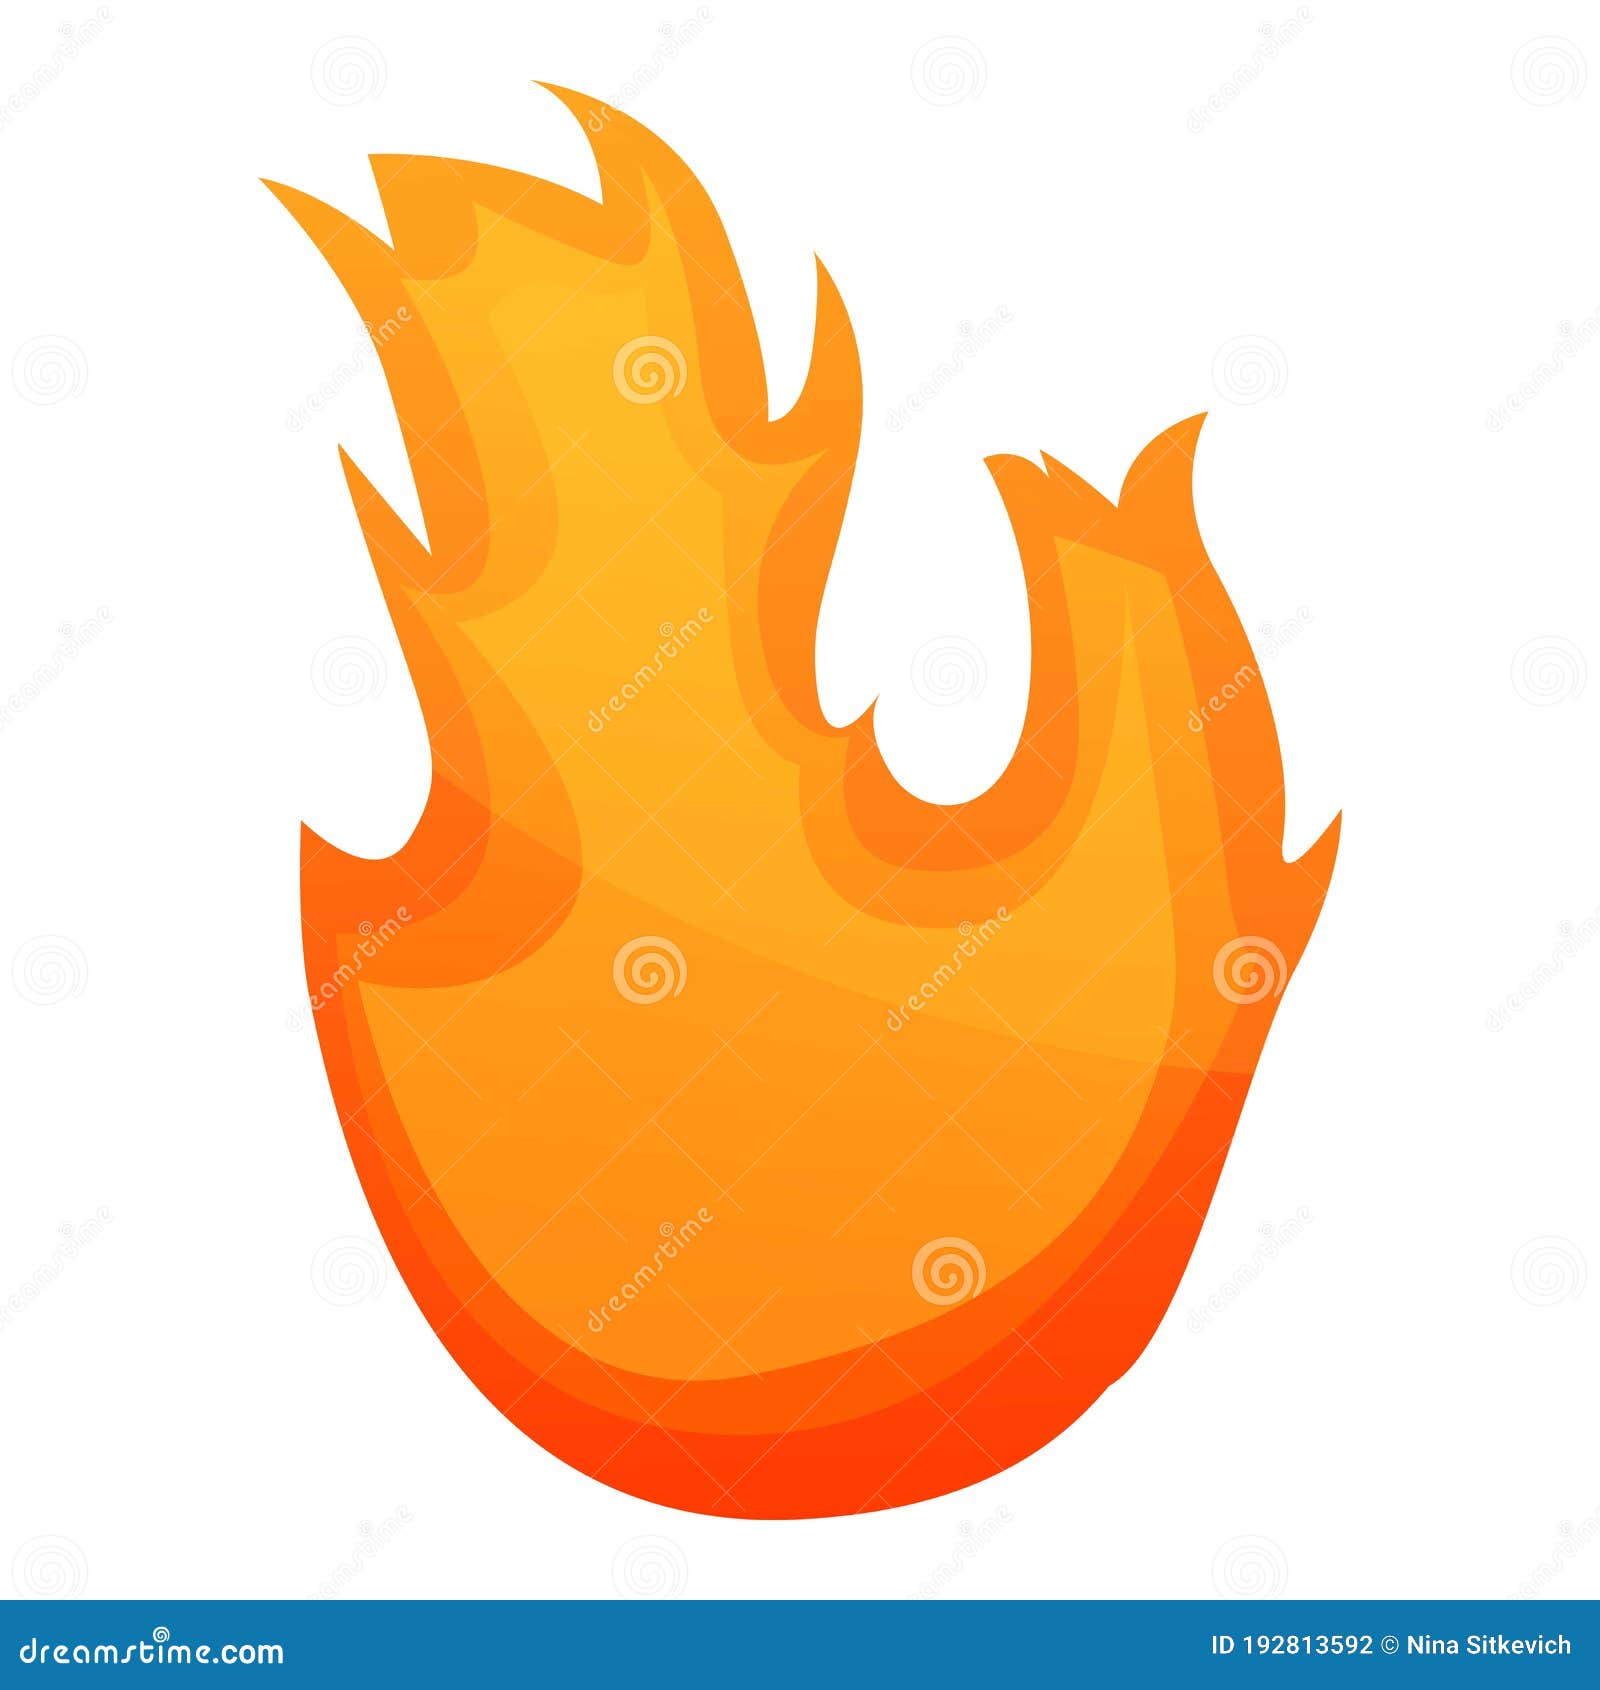 Ícone de chama de fogueira efeito de desenho animado de chama de